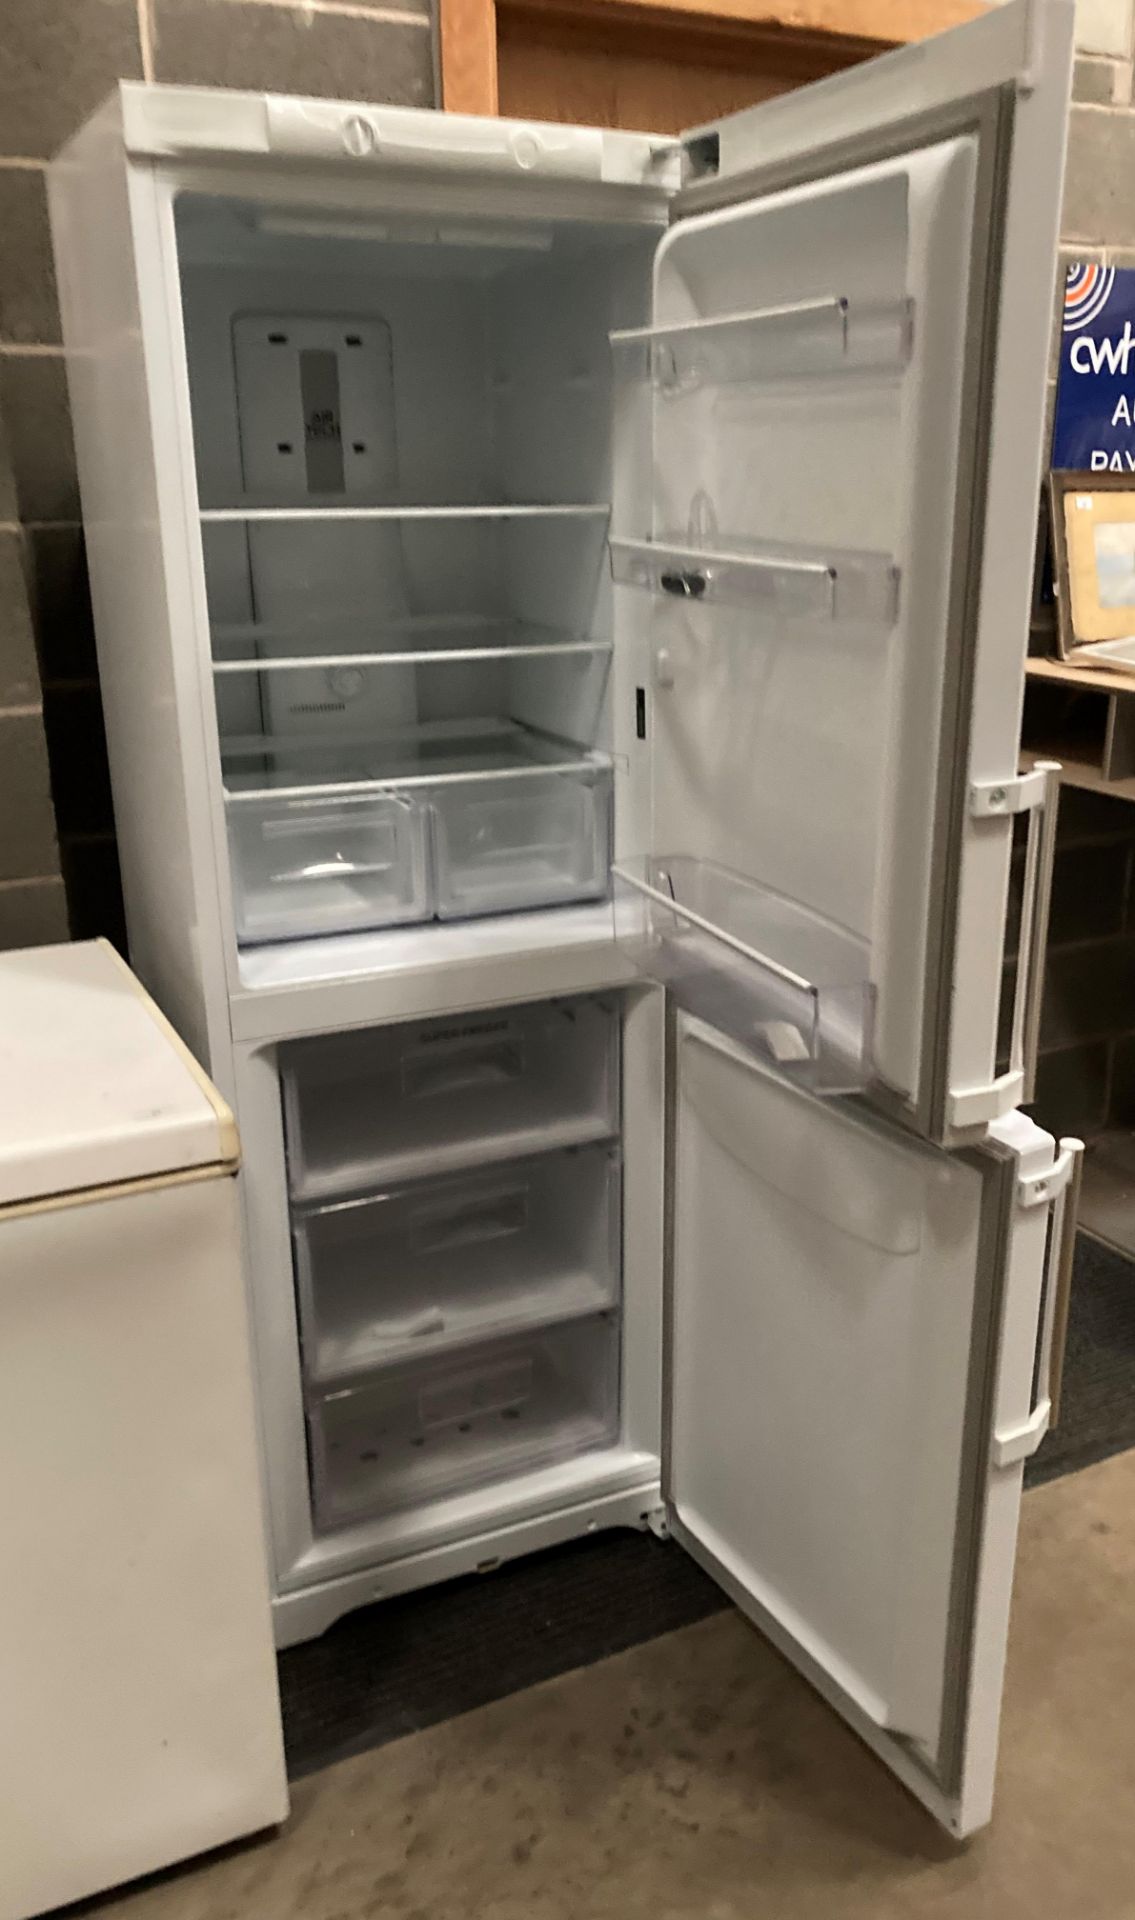 A Hotpoint Airtech Evolution EXFM1718 tall upright fridge freezer